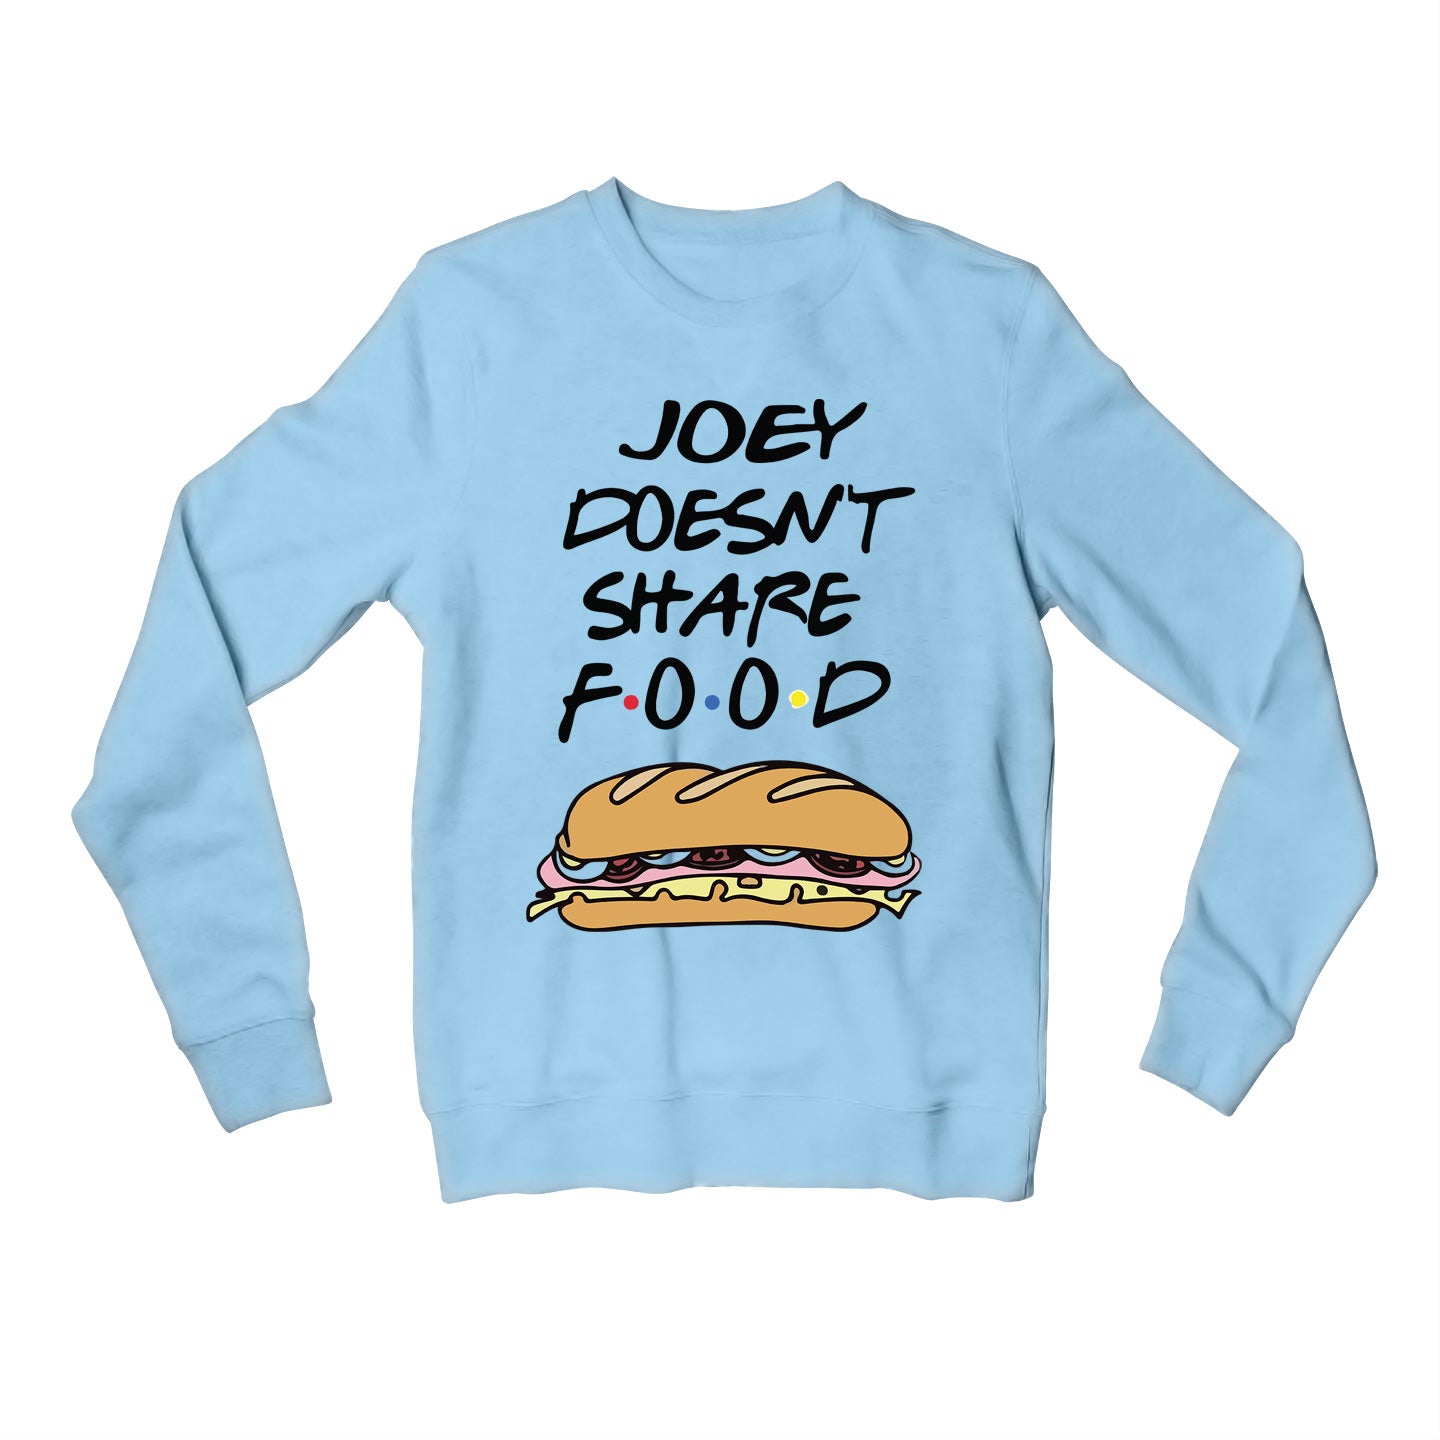 Friends Sweatshirt - Joey Doesn't Share Food Sweatshirt The Banyan Tee TBT